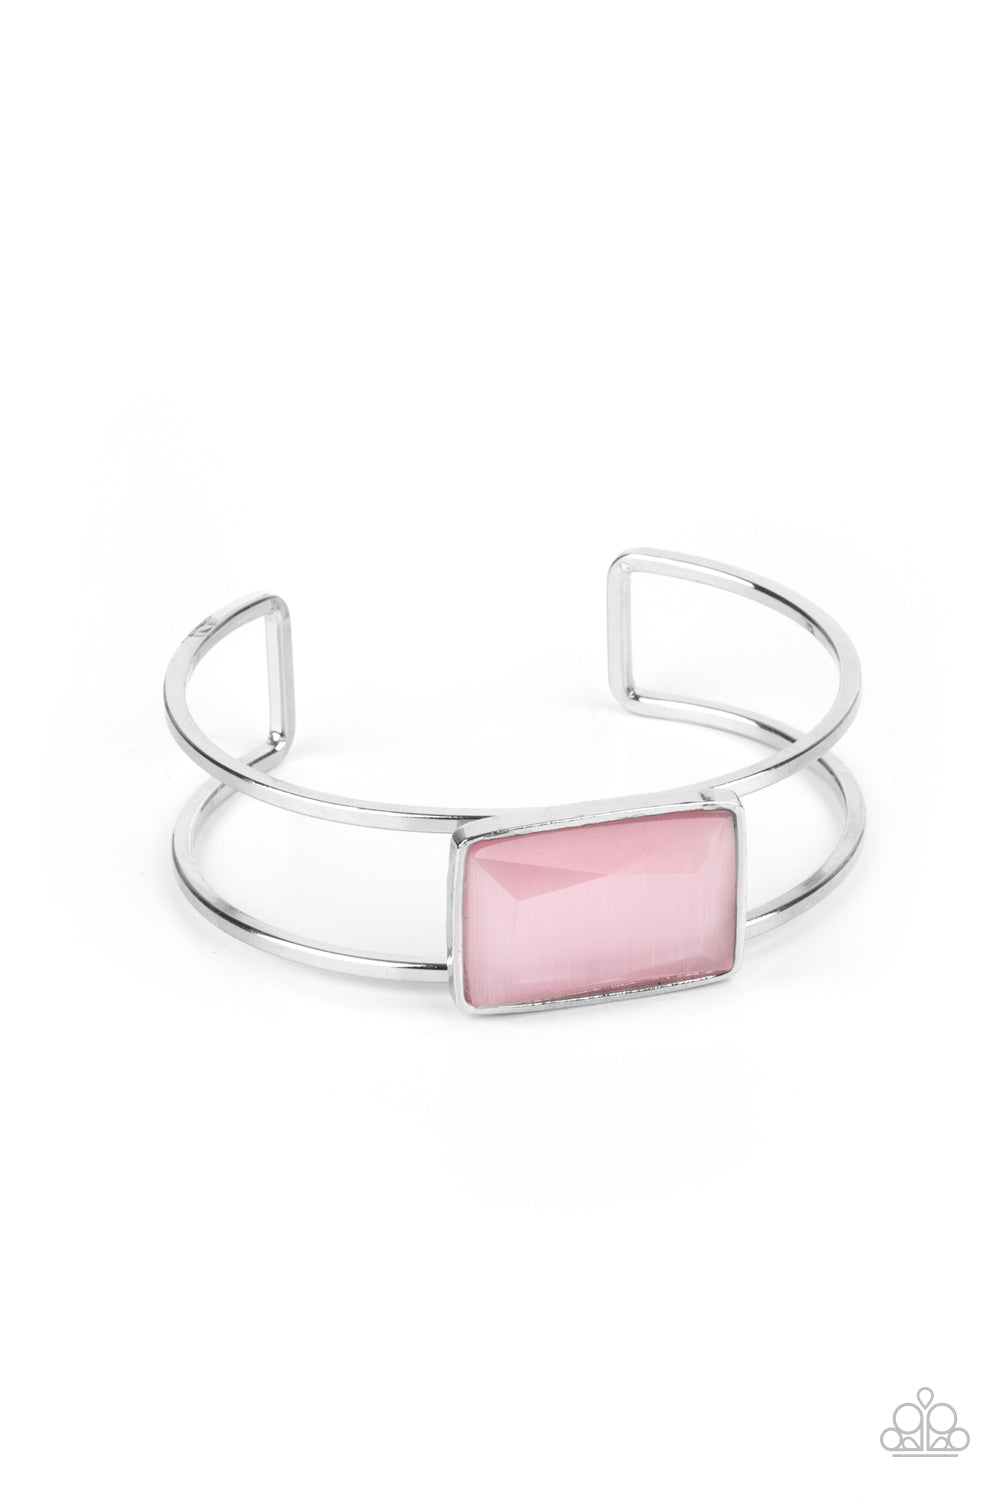 Rehearsal Refinement - Pink cuff bracelet